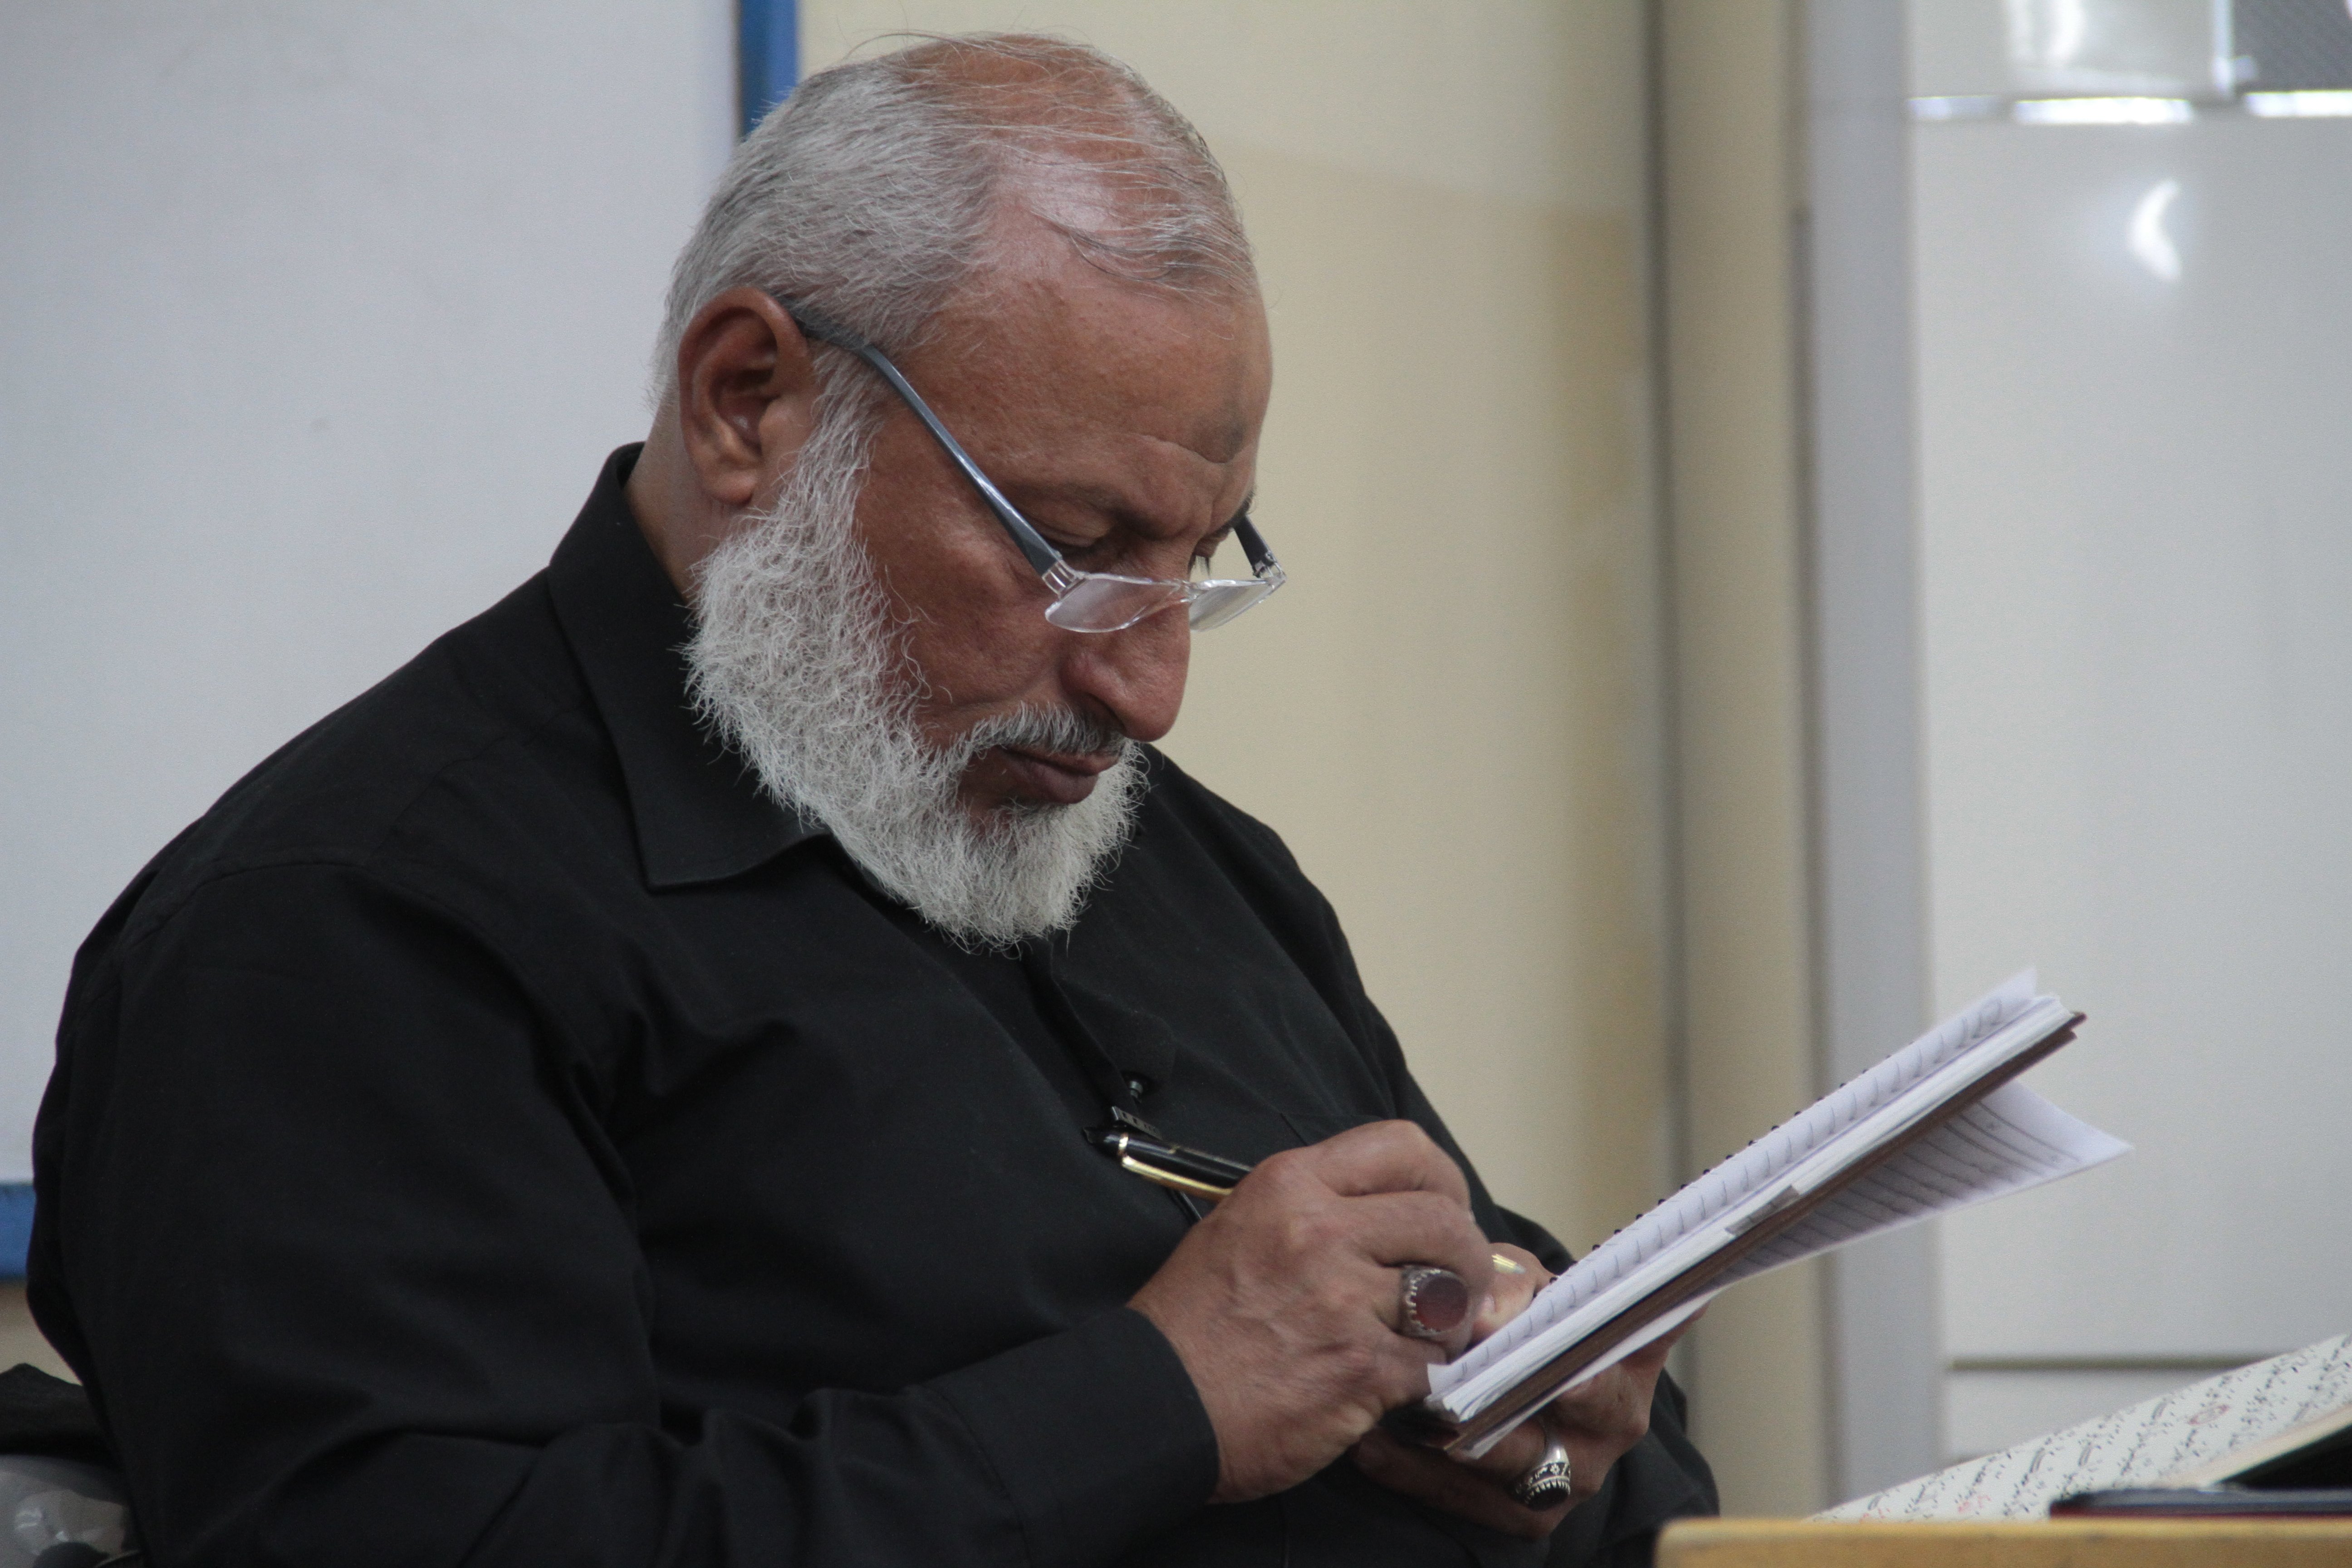 معهد القرآن الكريم يقيم دورة تطويرية لأحكام التلاوة لقرّاء قضاء عين التمر